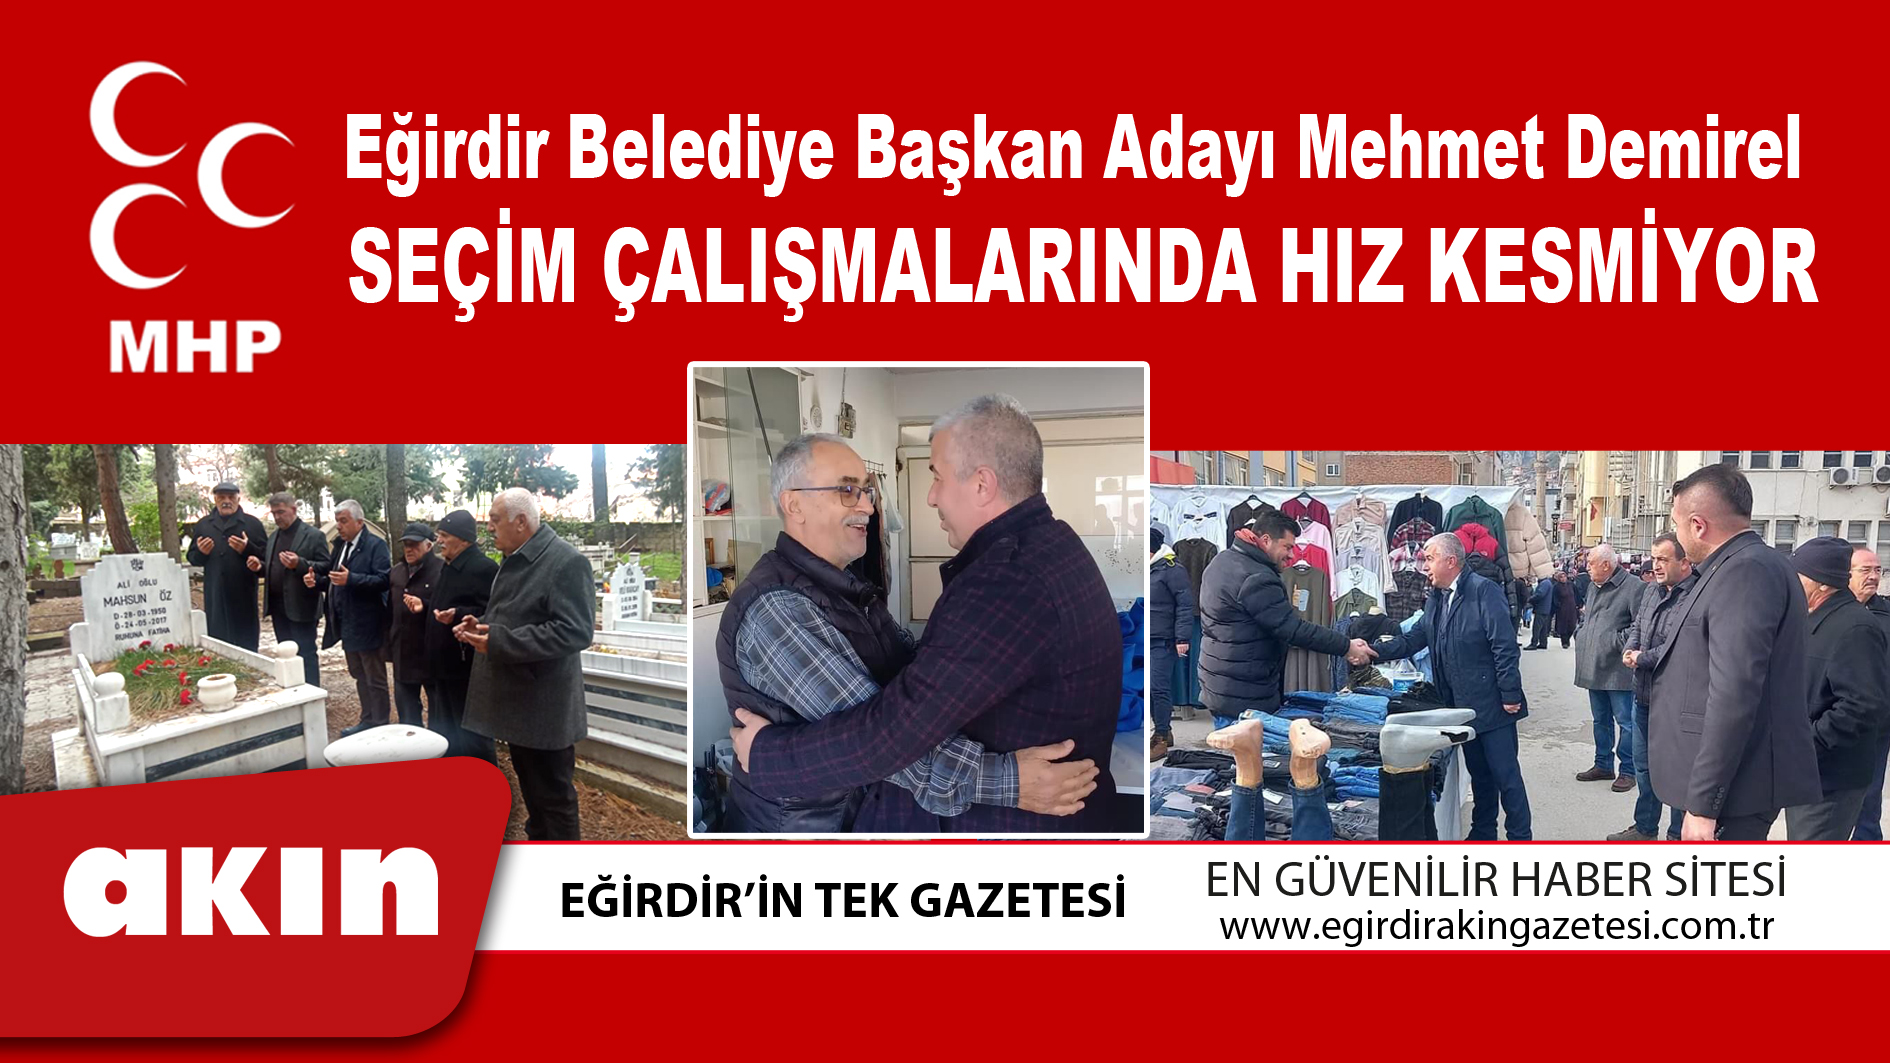 MHP Belediye Başkan Adayı Mehmet Demirel, Seçim Çalışmalarında Hız Kesmiyor